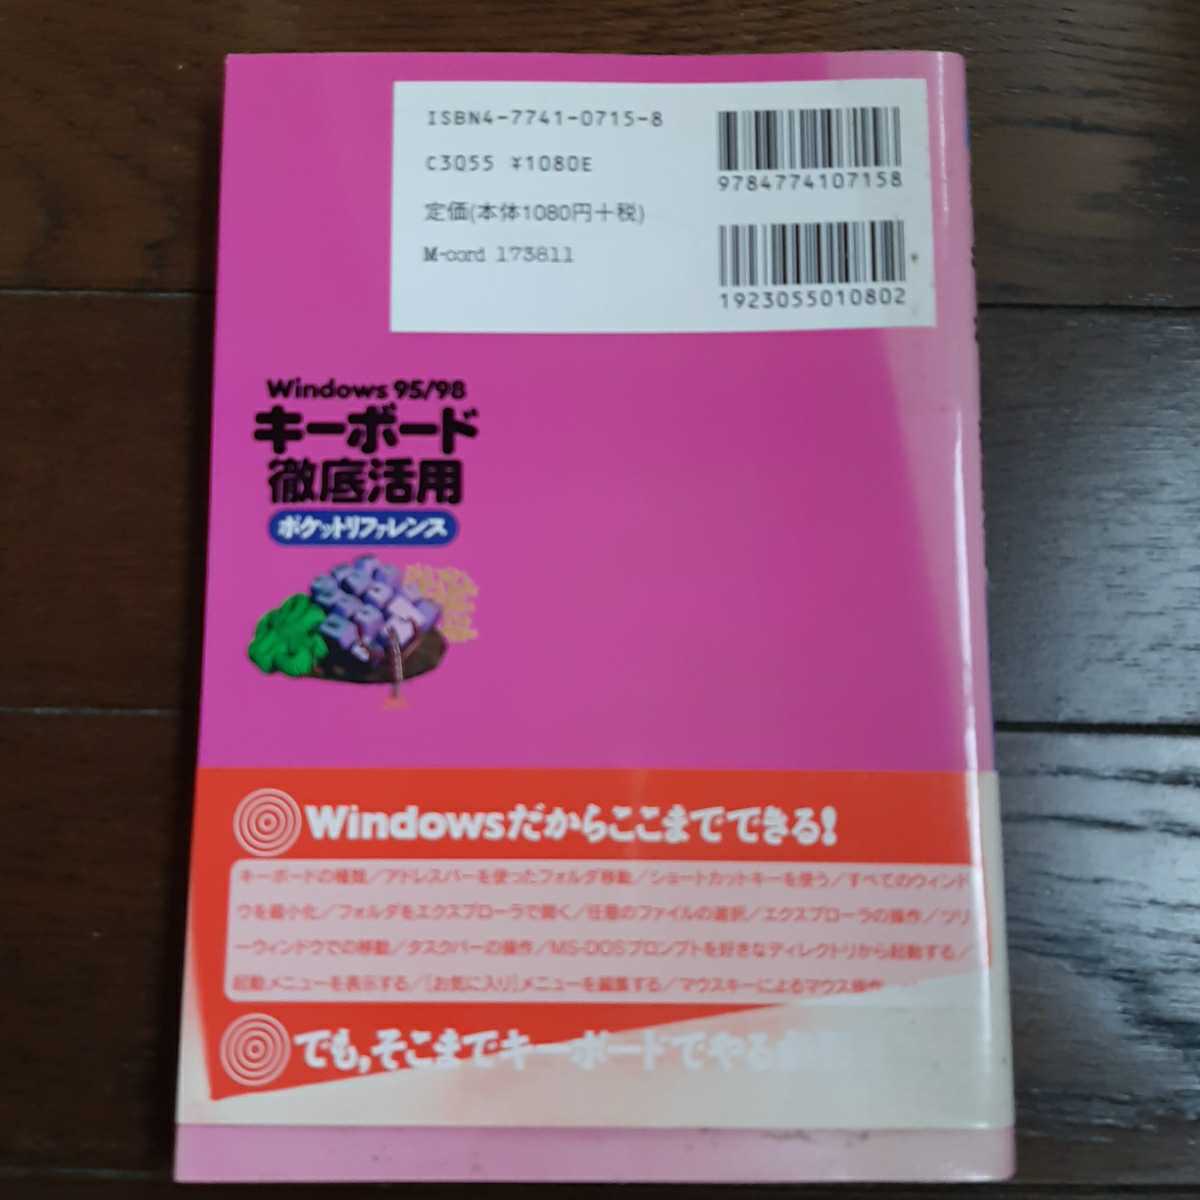 Windows 95 98 キーボード徹底活用 ポケットリファレンス 技術評論社_画像2